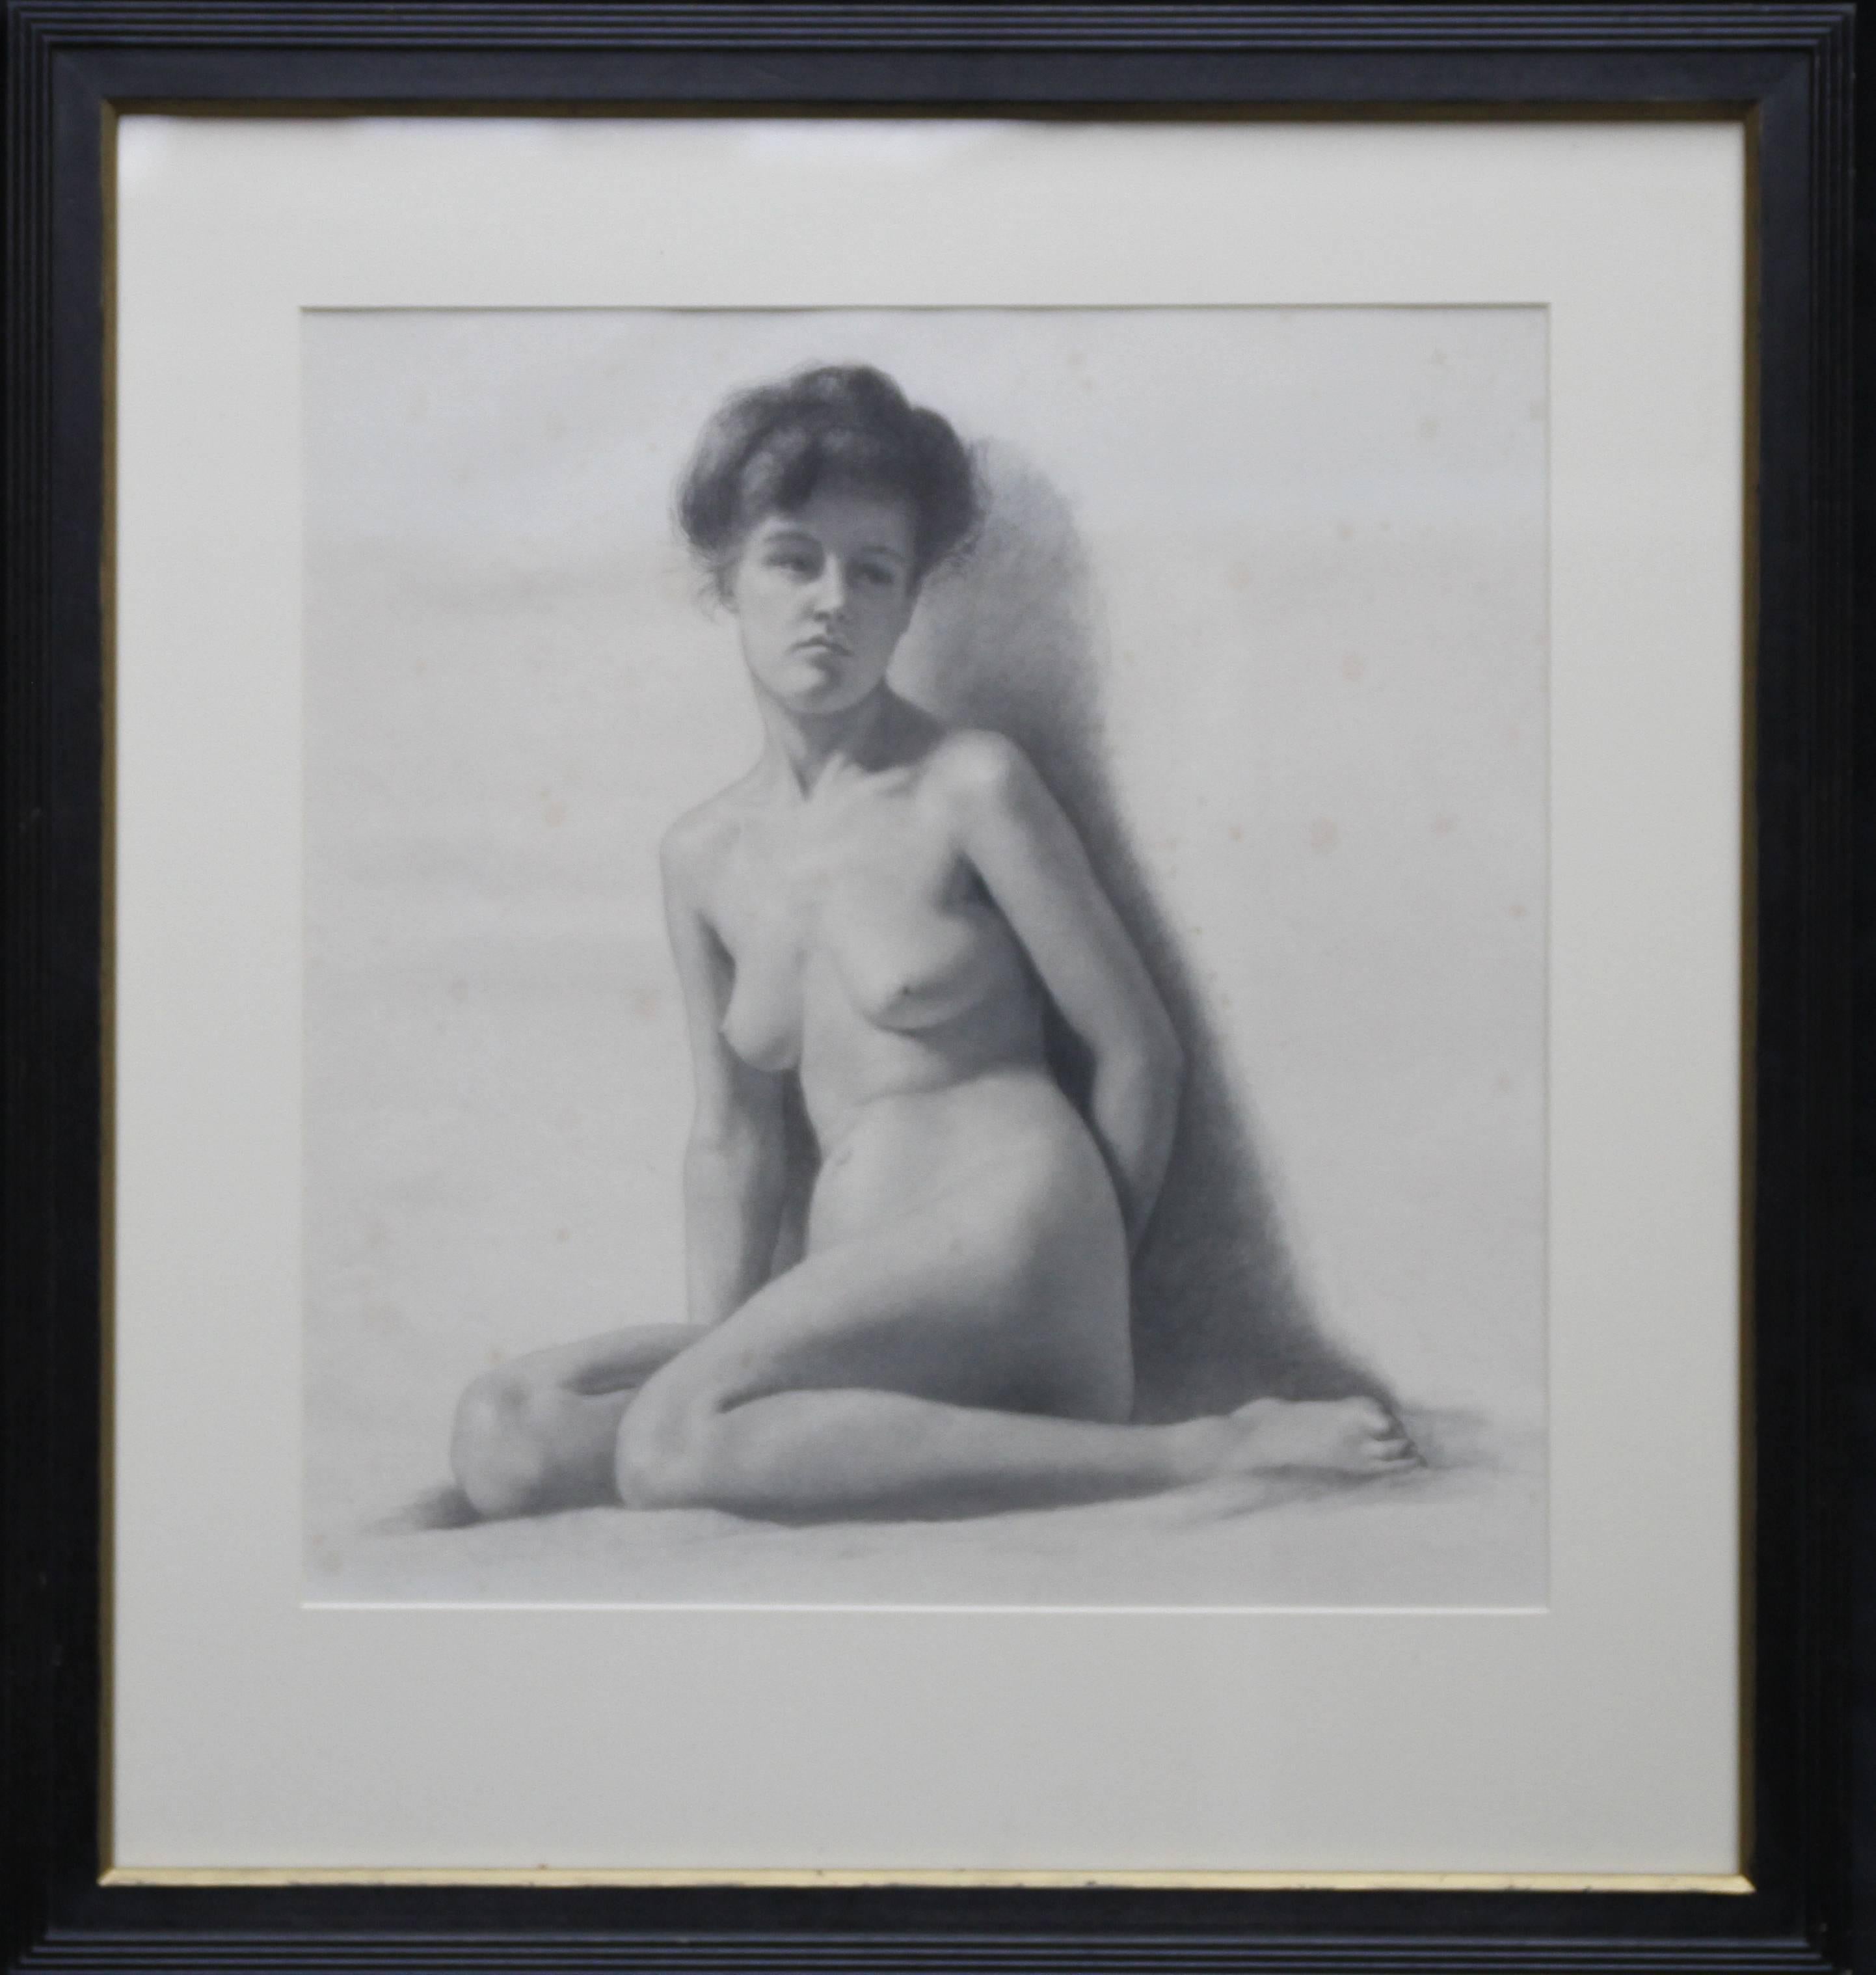 Femme nue - Art britannique italien - Dessin de portrait de femme nue édouardien